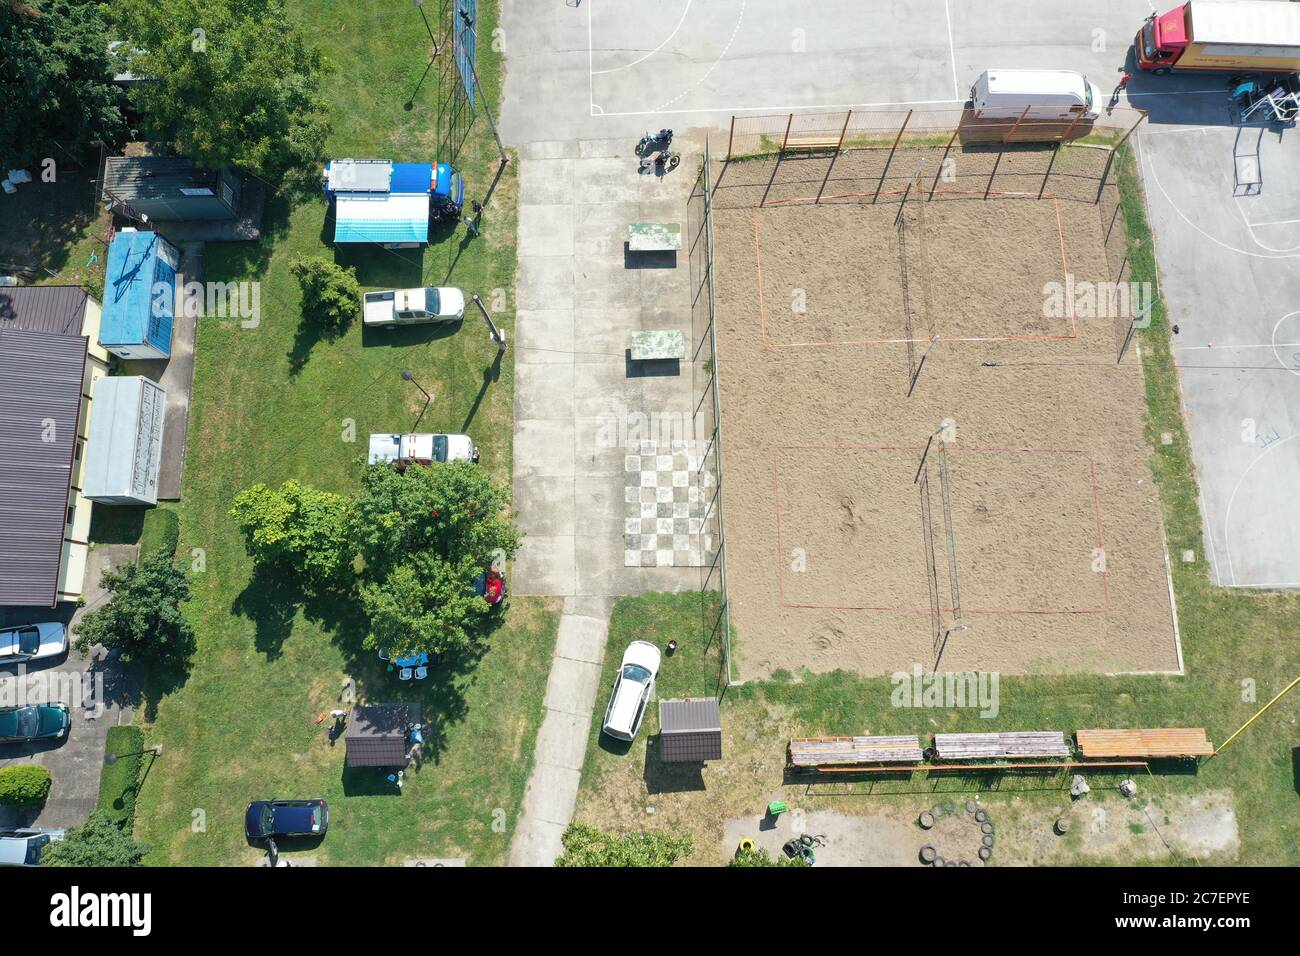 Photographie aérienne d'un terrain de jeu avec un terrain de volley à Journée en Bosnie-Herzégovine Banque D'Images